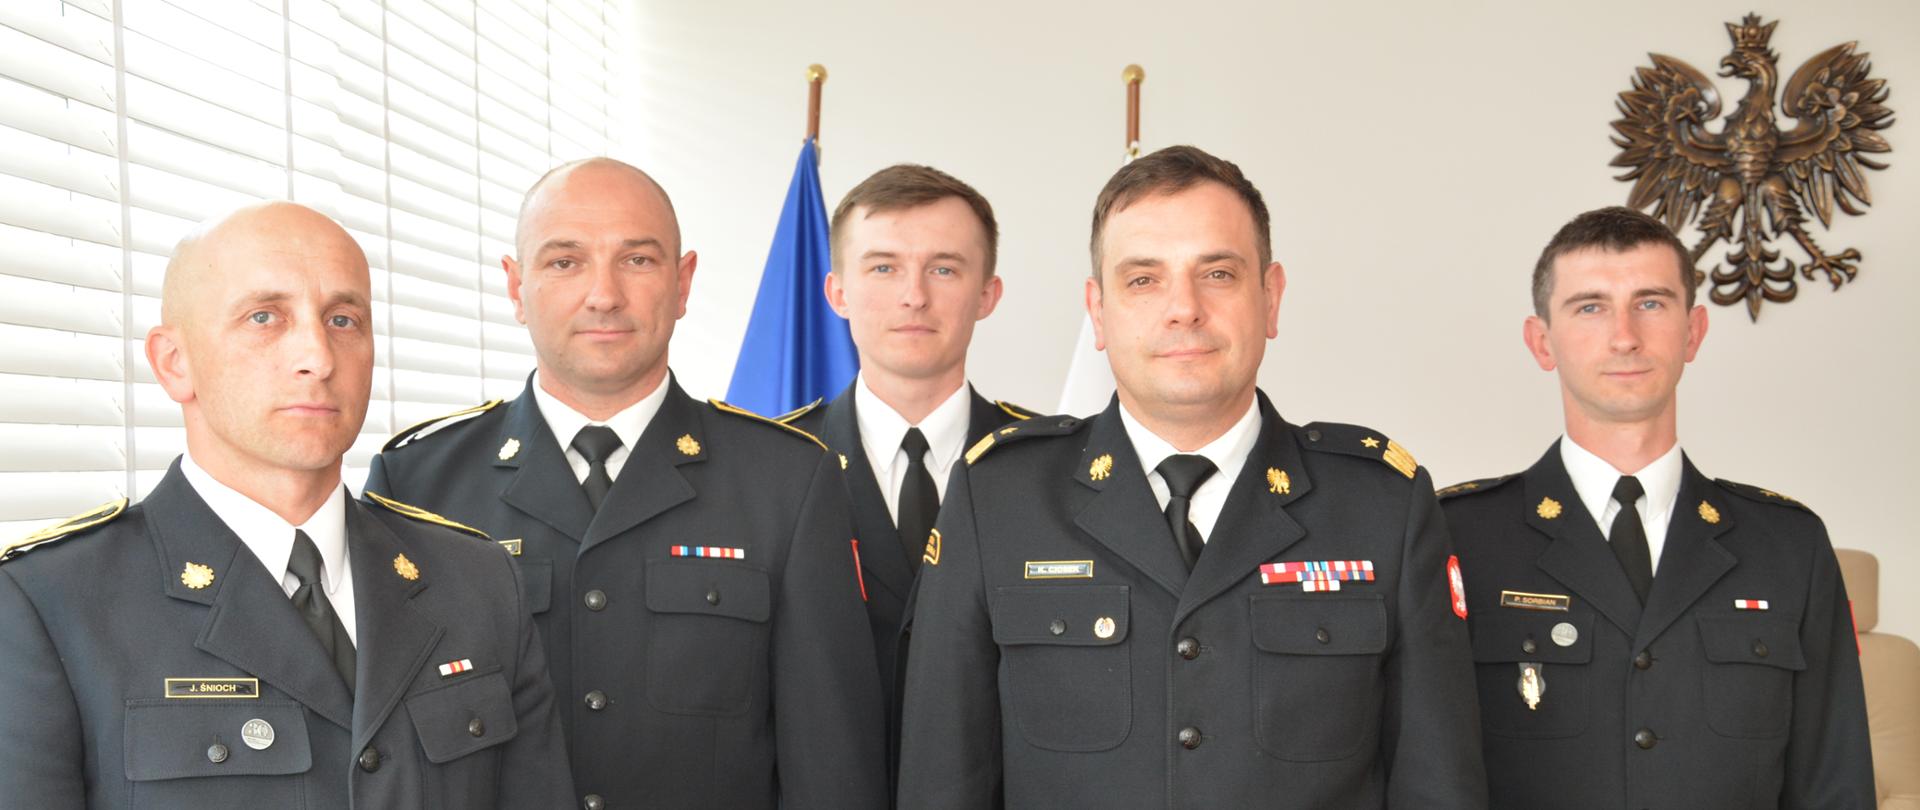 Czterech mężczyzn w mundurach strażackich pozuje do zdjęcia.